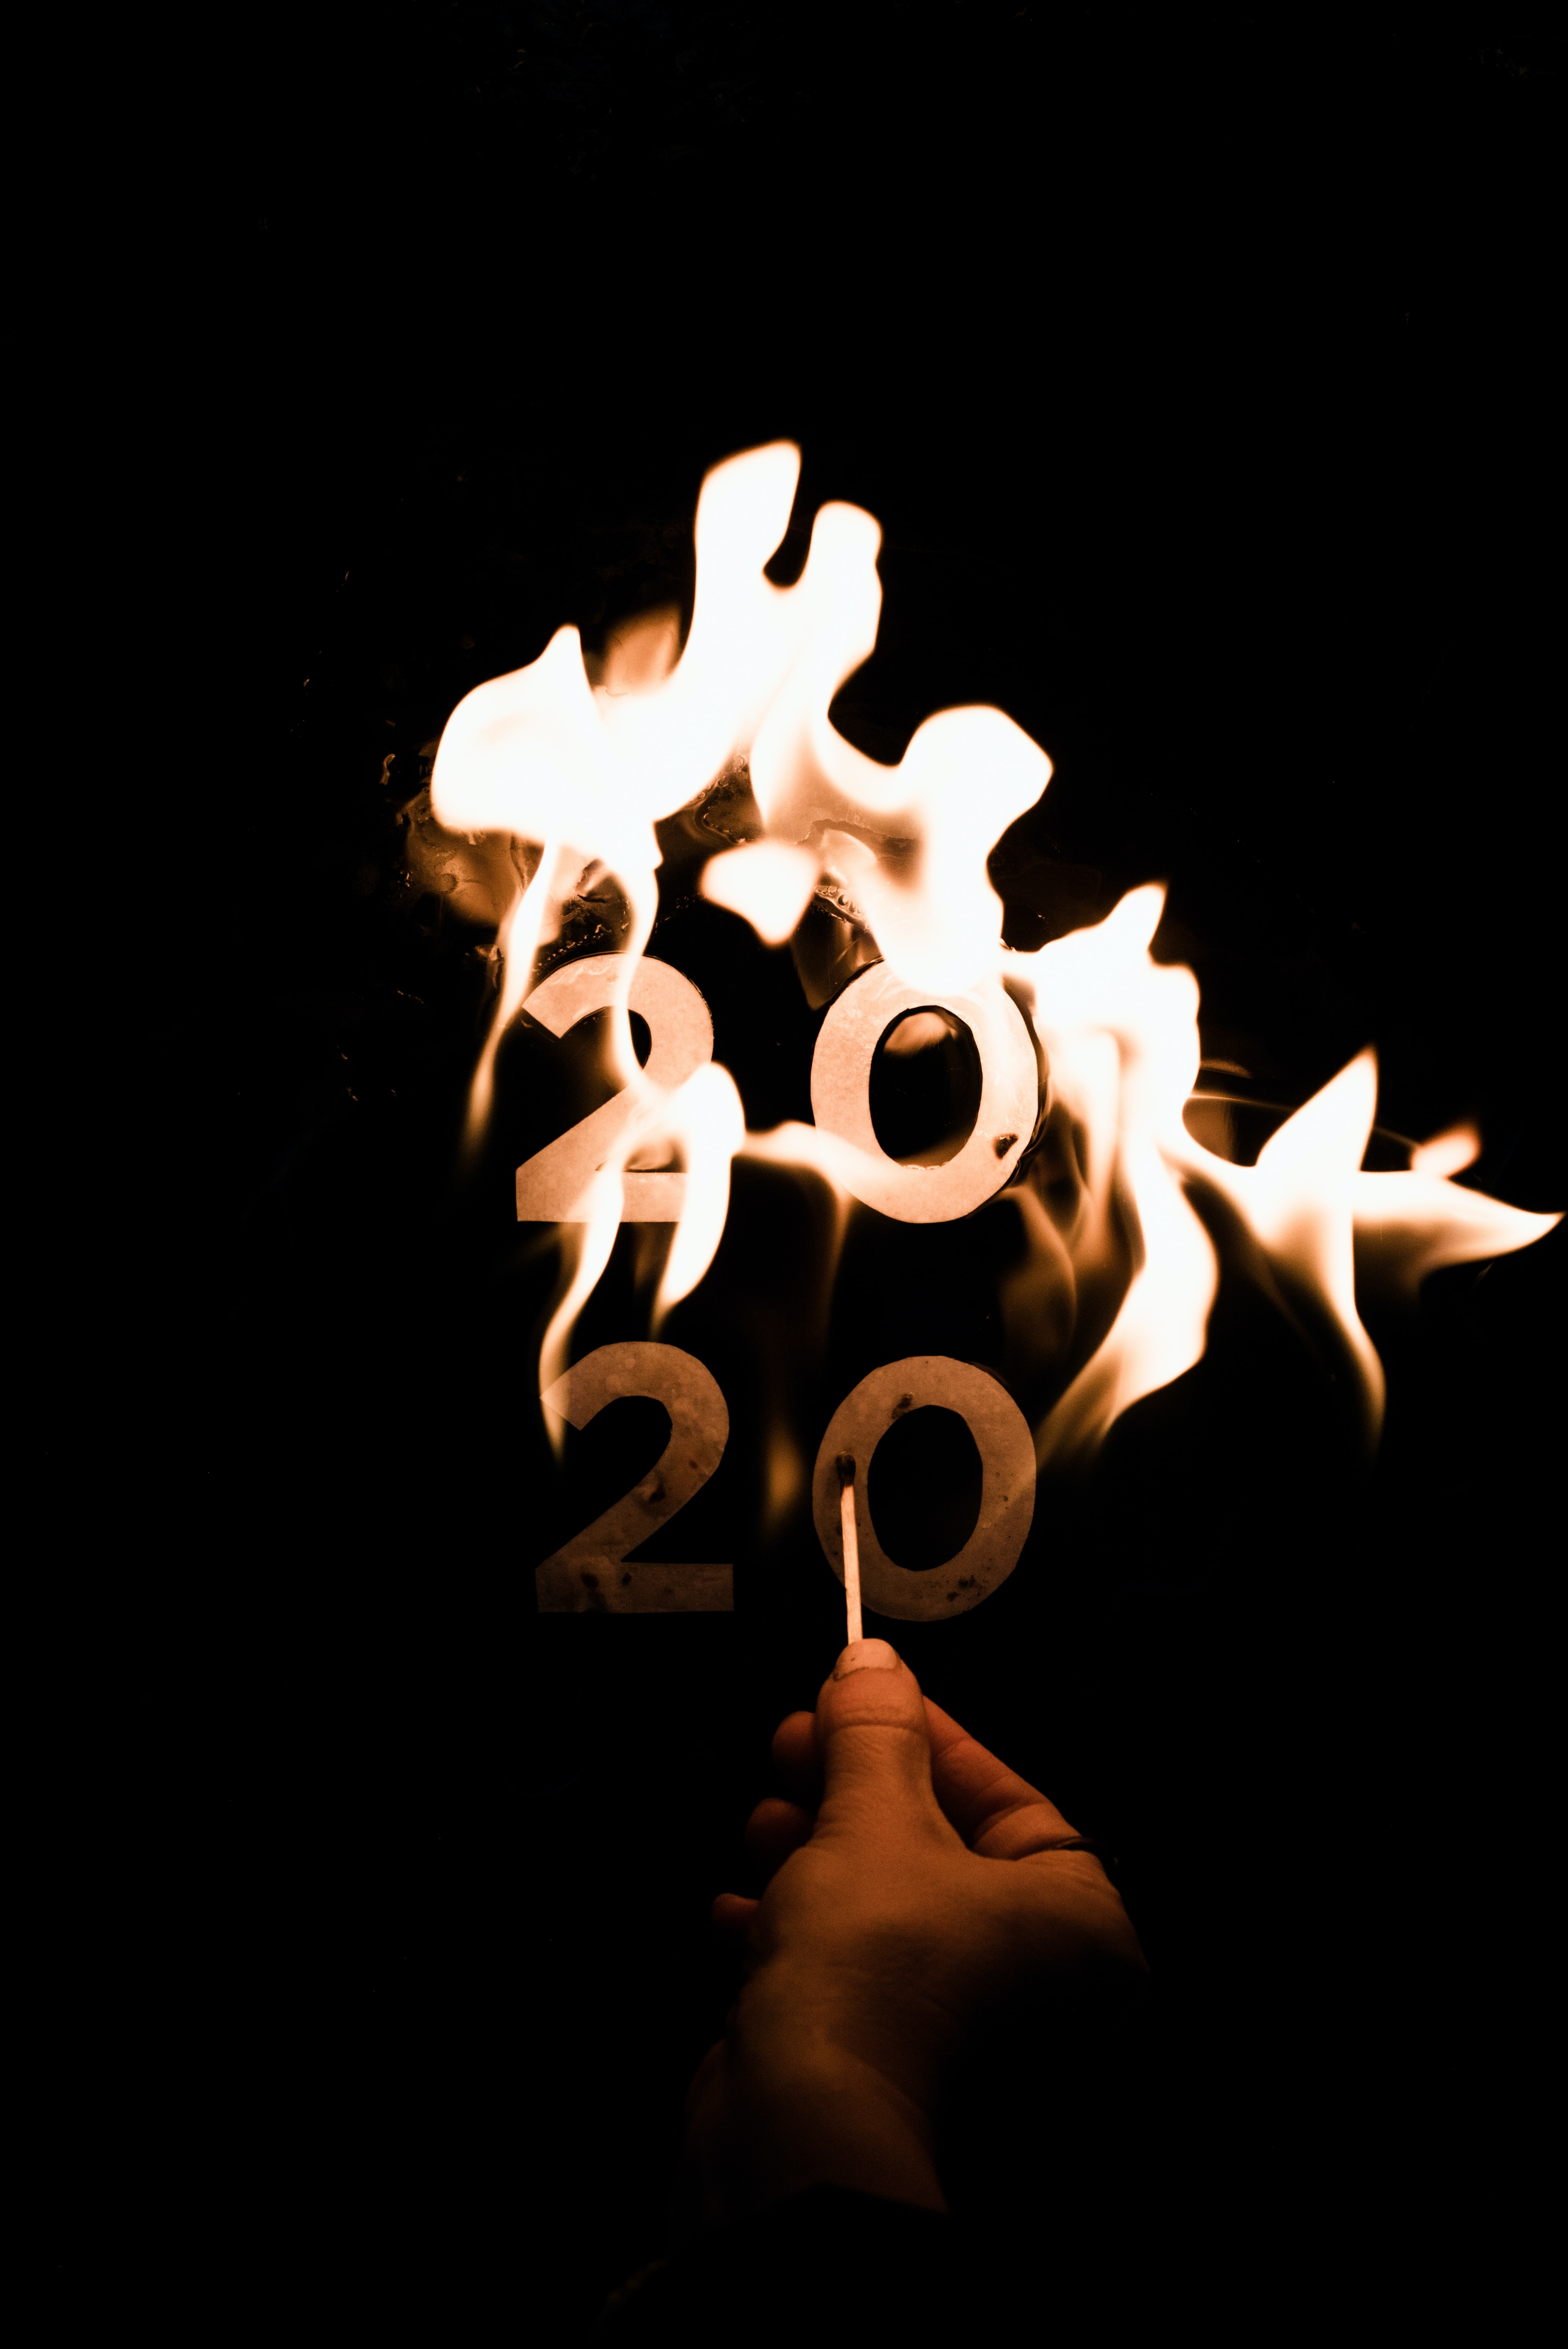 dark, fire, flame, to burn, burn, 2020, year